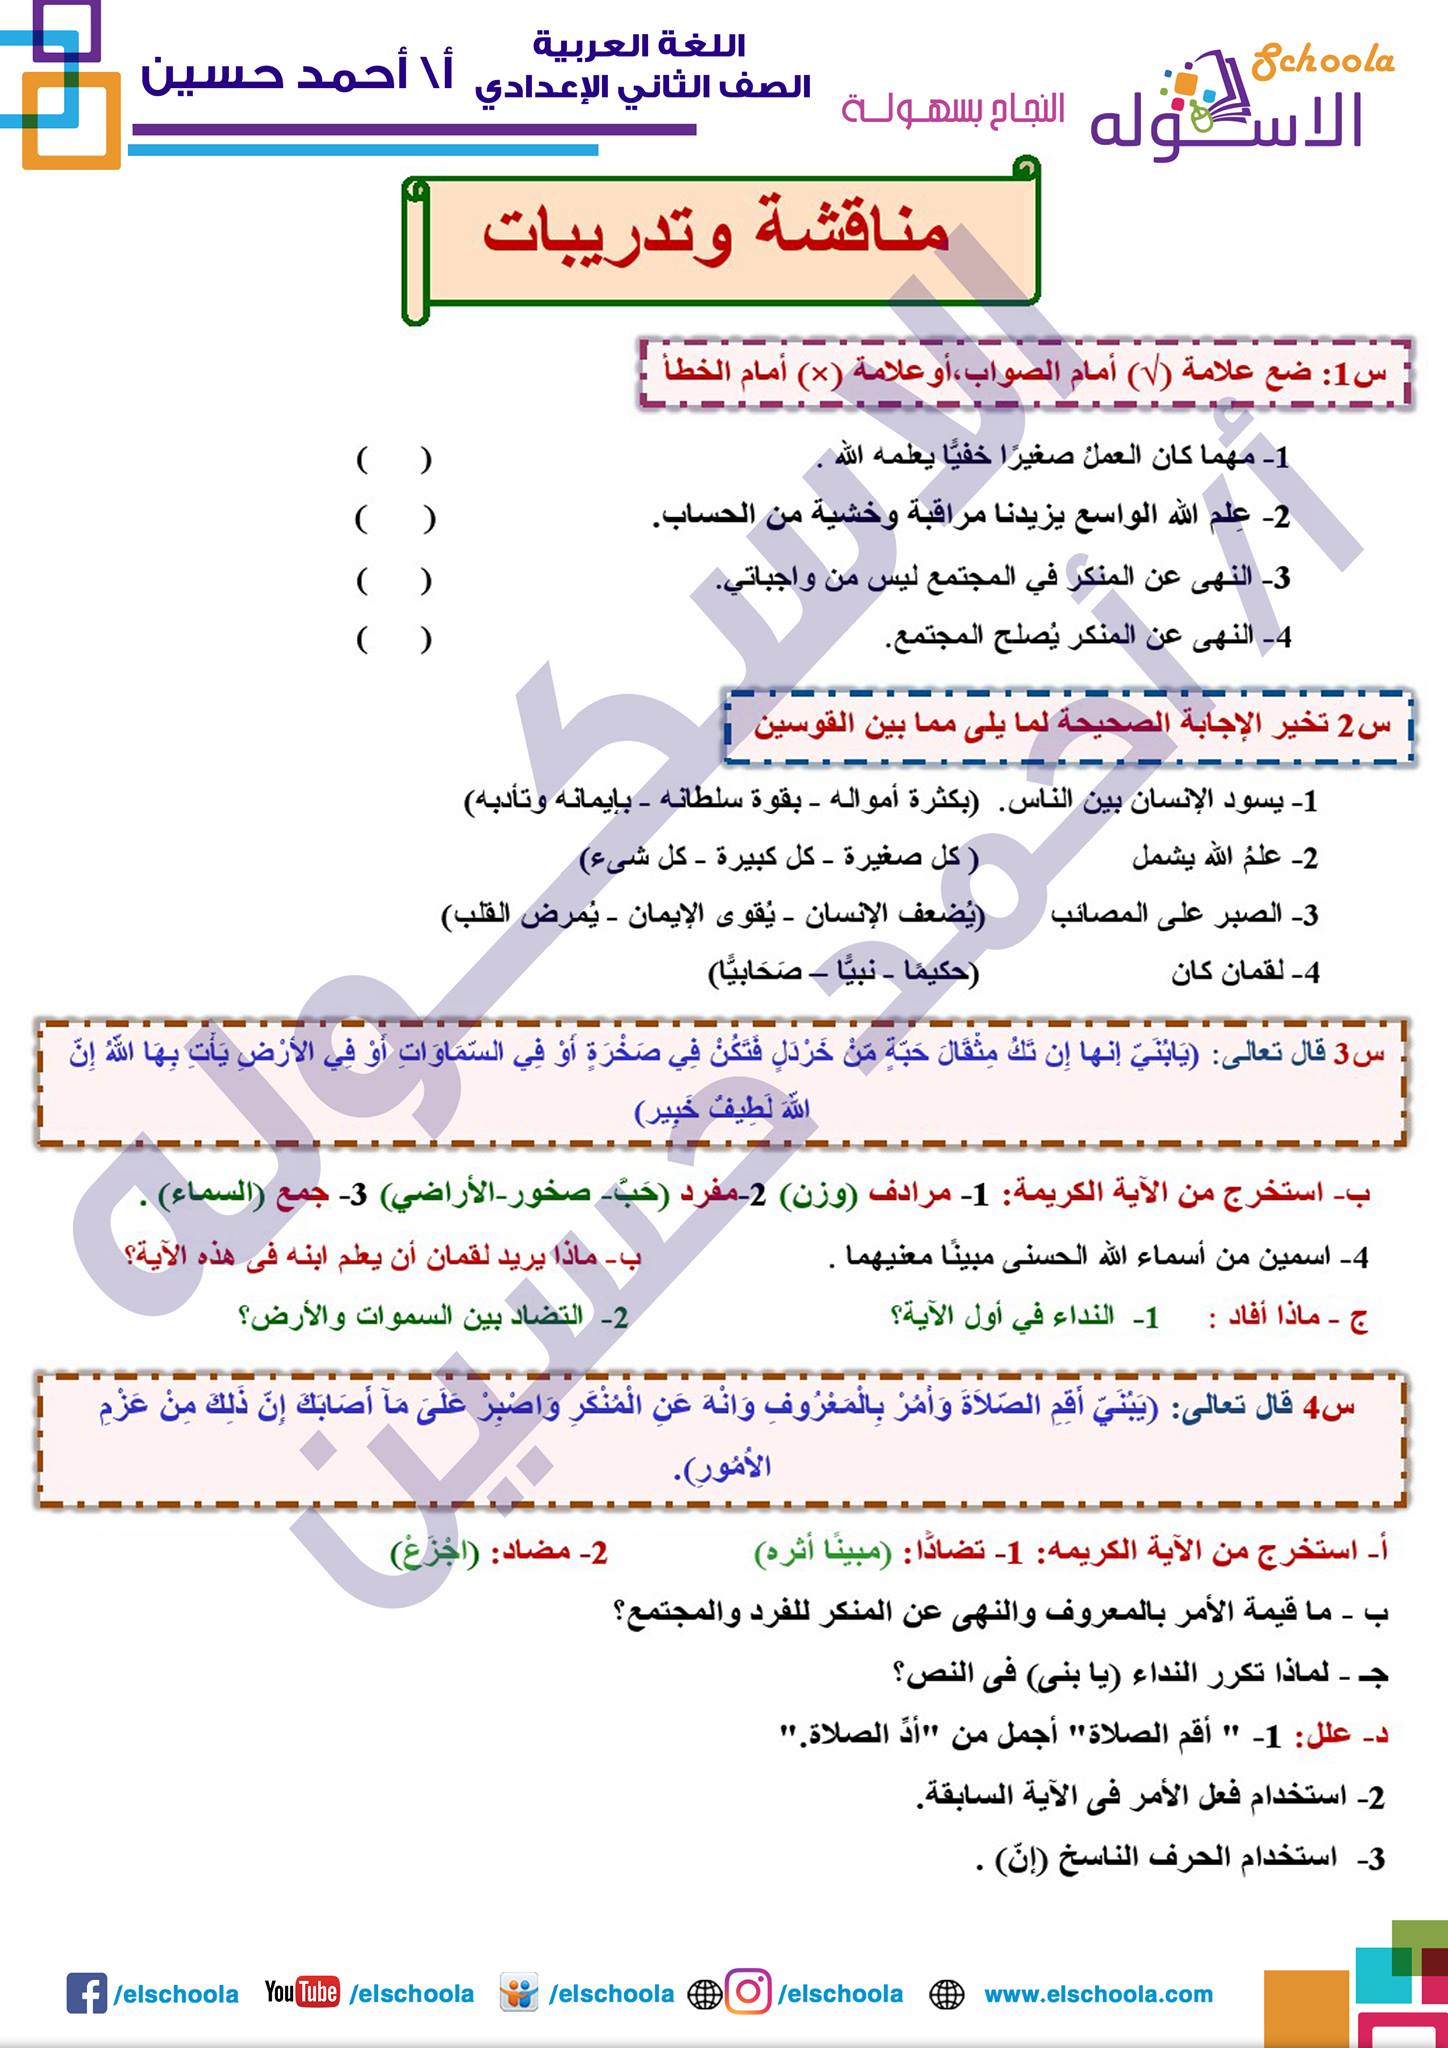 مذكرة لغة عربية الوحدة الأولى (الصف الثاني الإعدادي) الترم الأول 2021